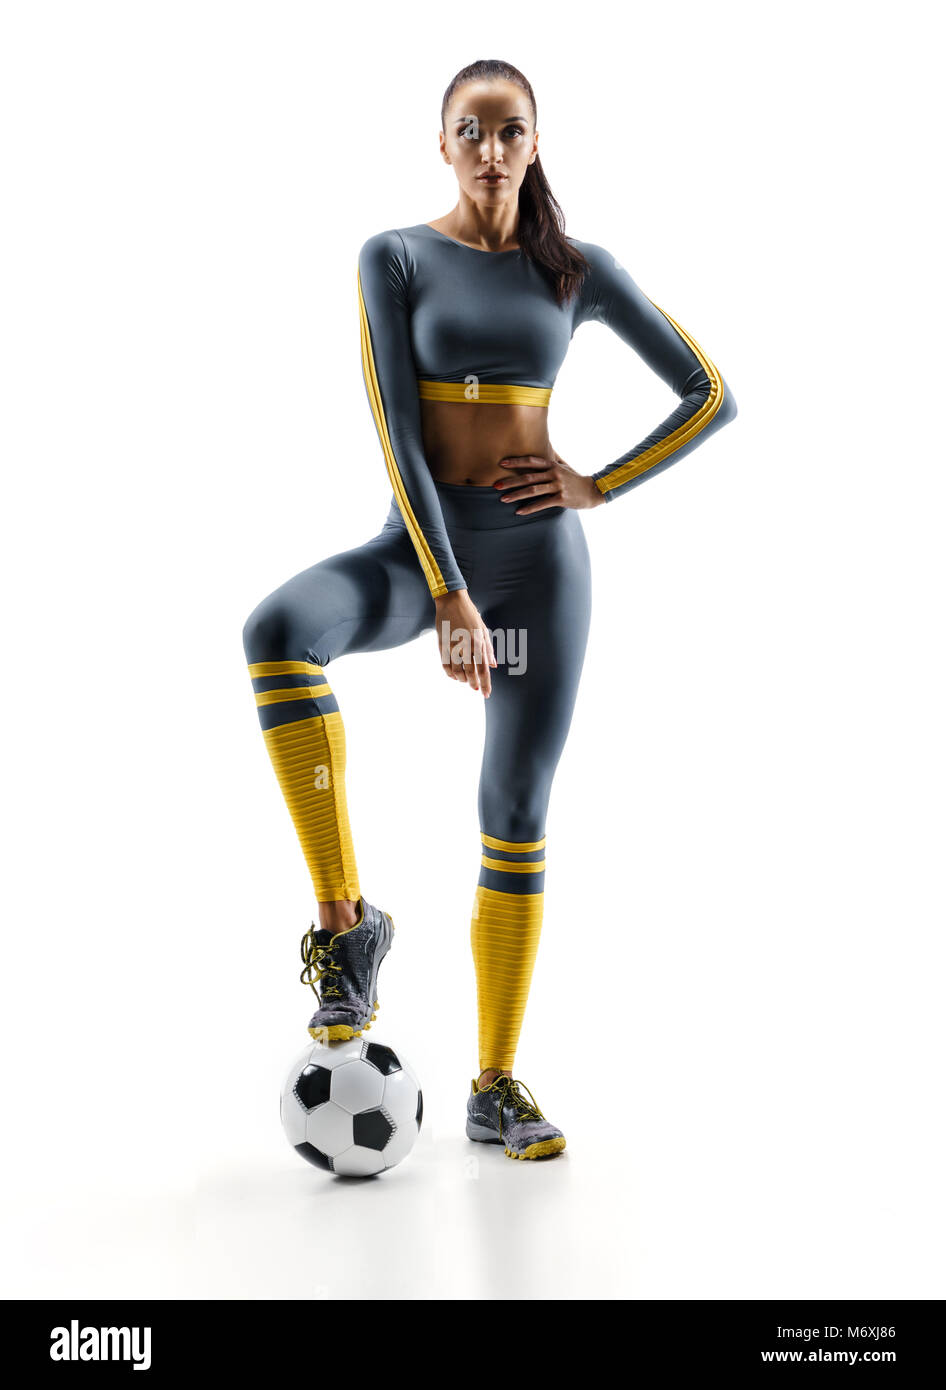 Prêt à jouer. Joueur de football femme debout en silhouette isolé sur fond blanc. Sport et mode de vie sain Banque D'Images